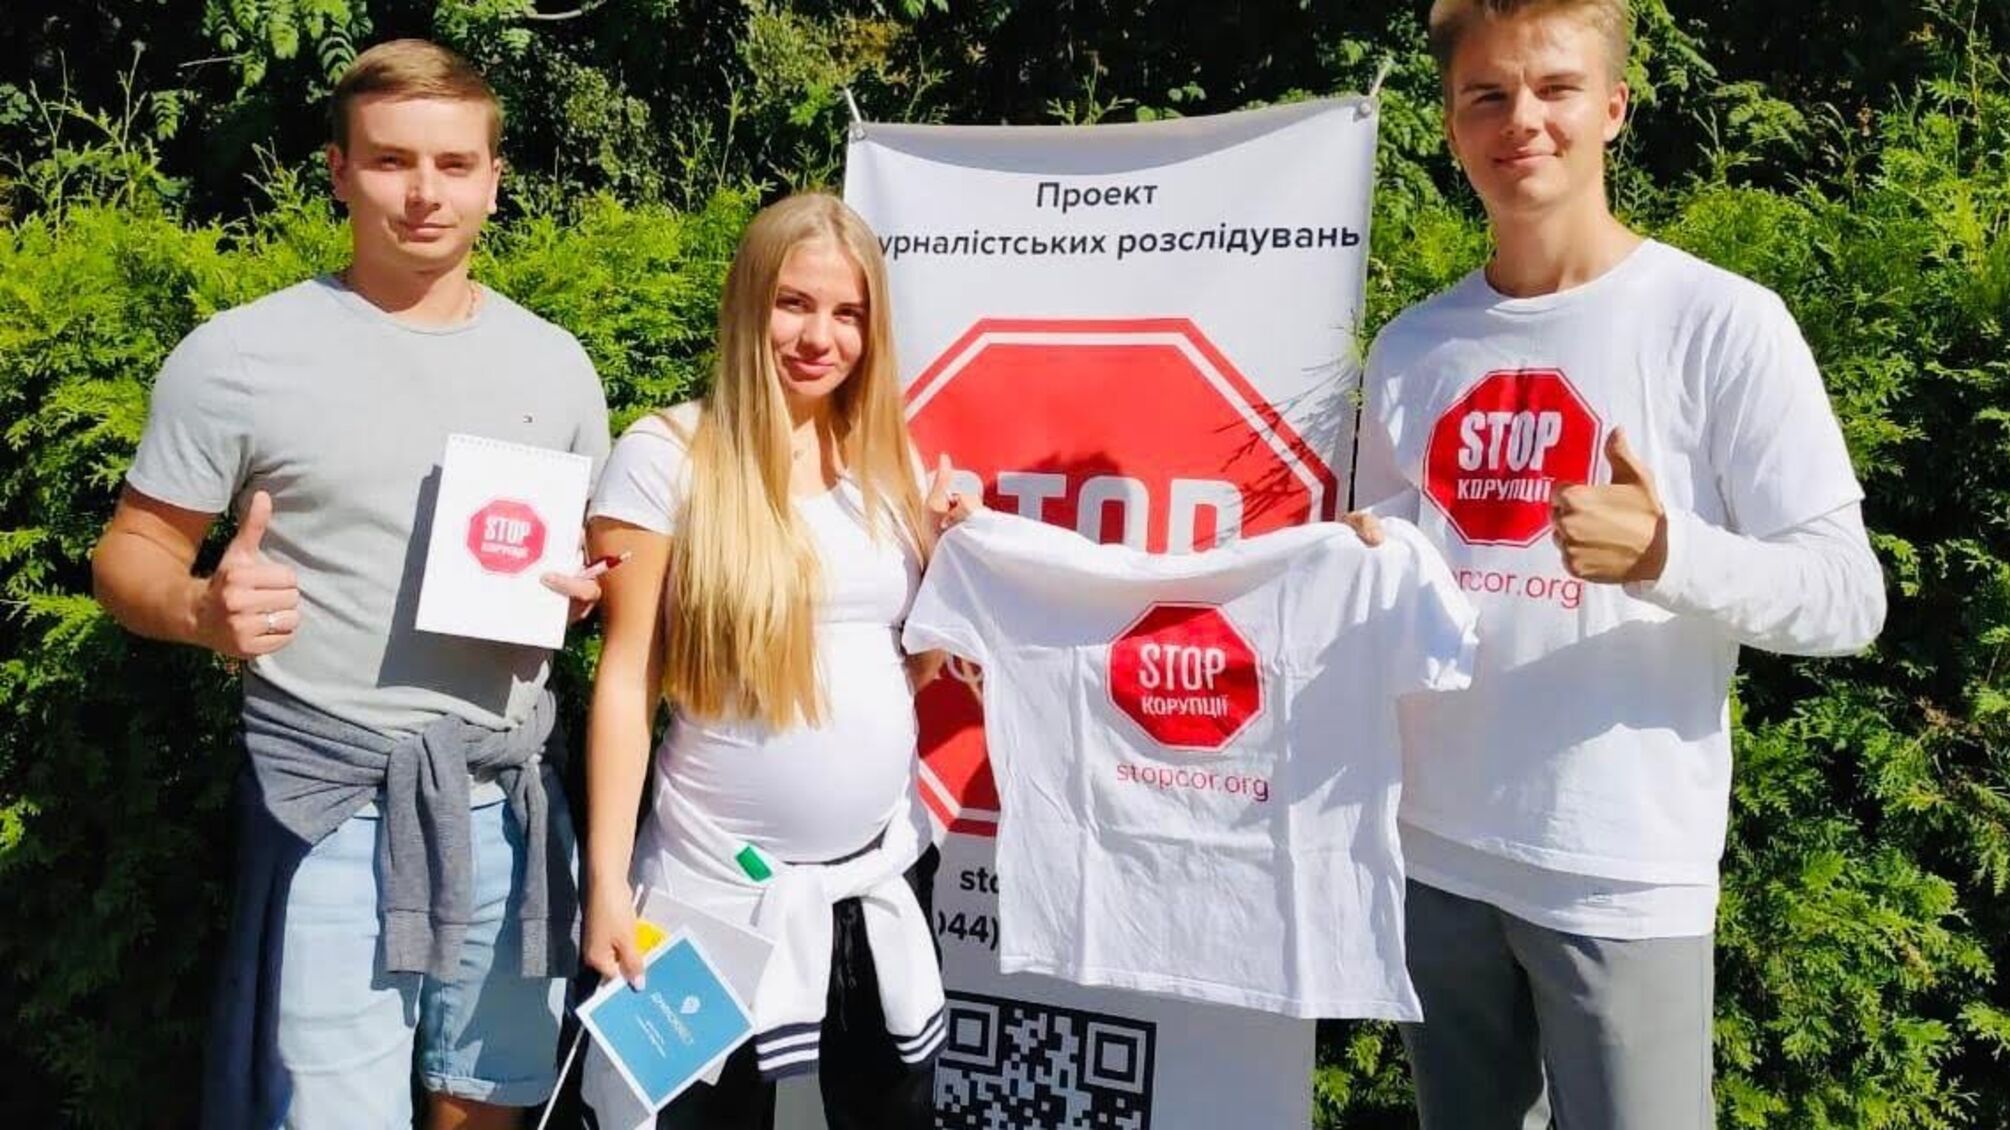 Намети, конкурси, селфі та боротьба з корупцією: як пройшов 'ДумкоFest' у Києві